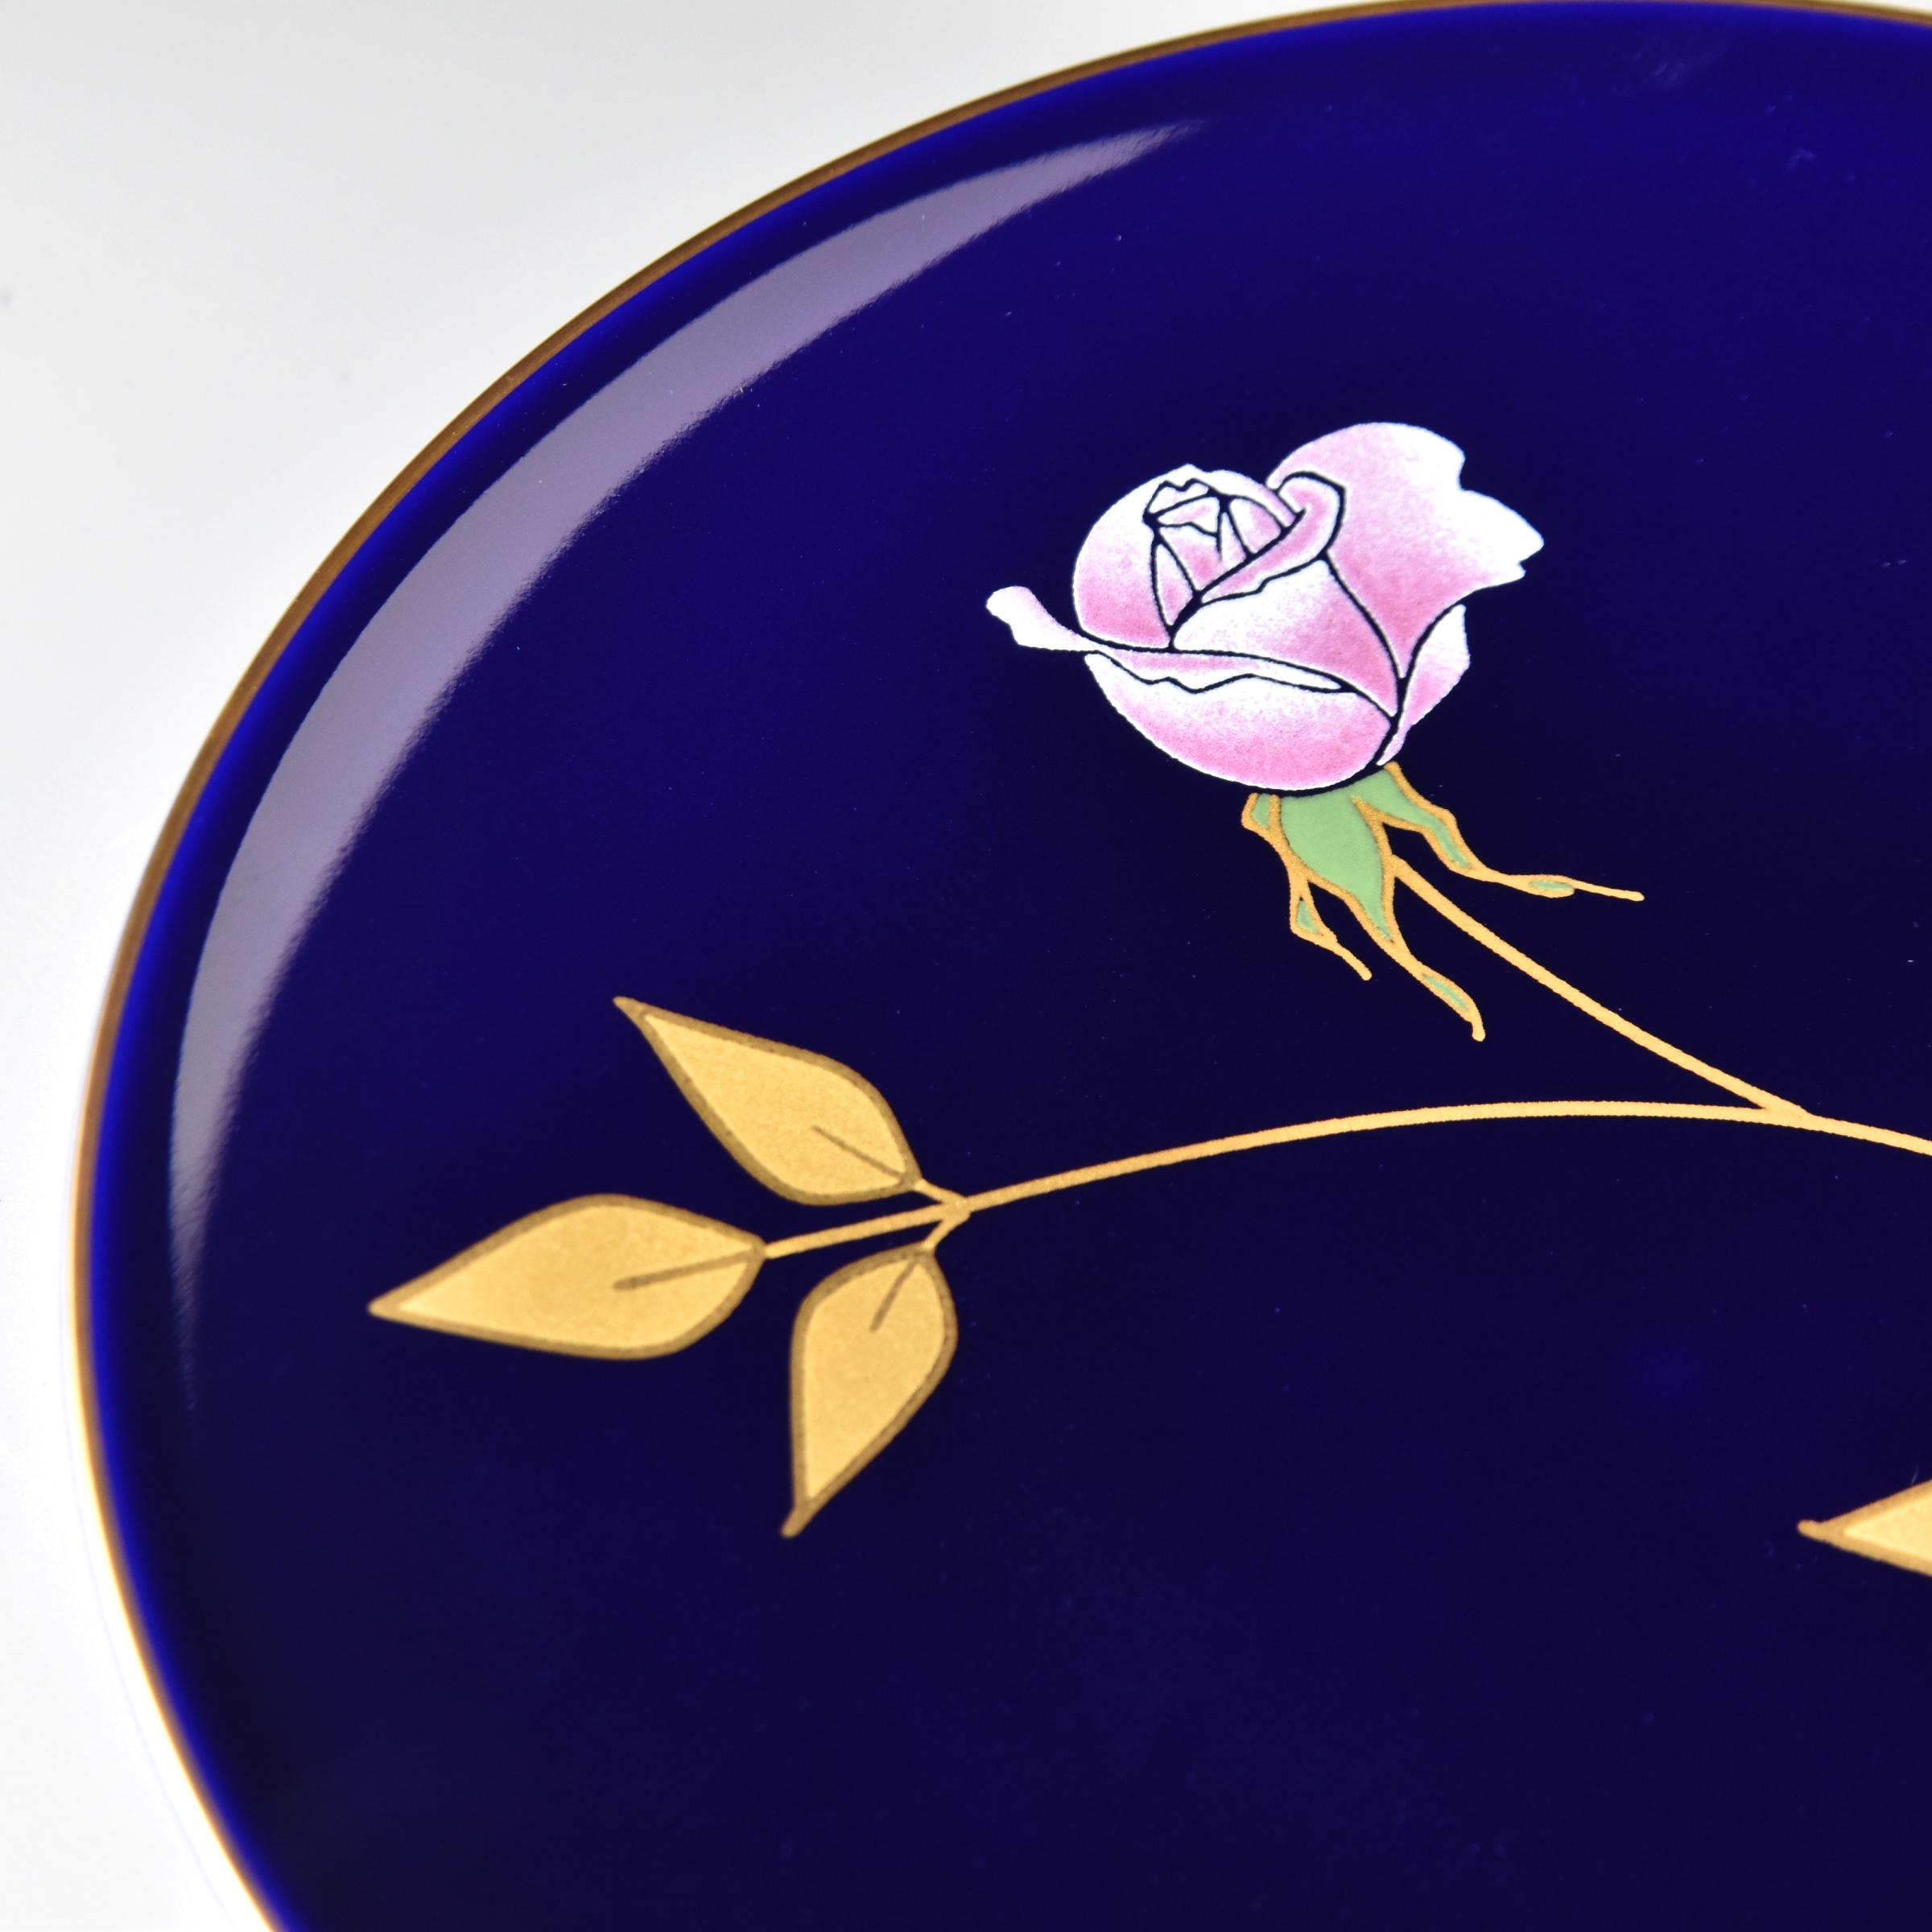 高級感のある瑠璃色がとても綺麗です。バラの花は高度な技術が施されており、ピンク色がグラデーションになっています。金彩の葉っぱの渕側は光沢のある金、内側はマットな金の2種類を使って表現してあります。